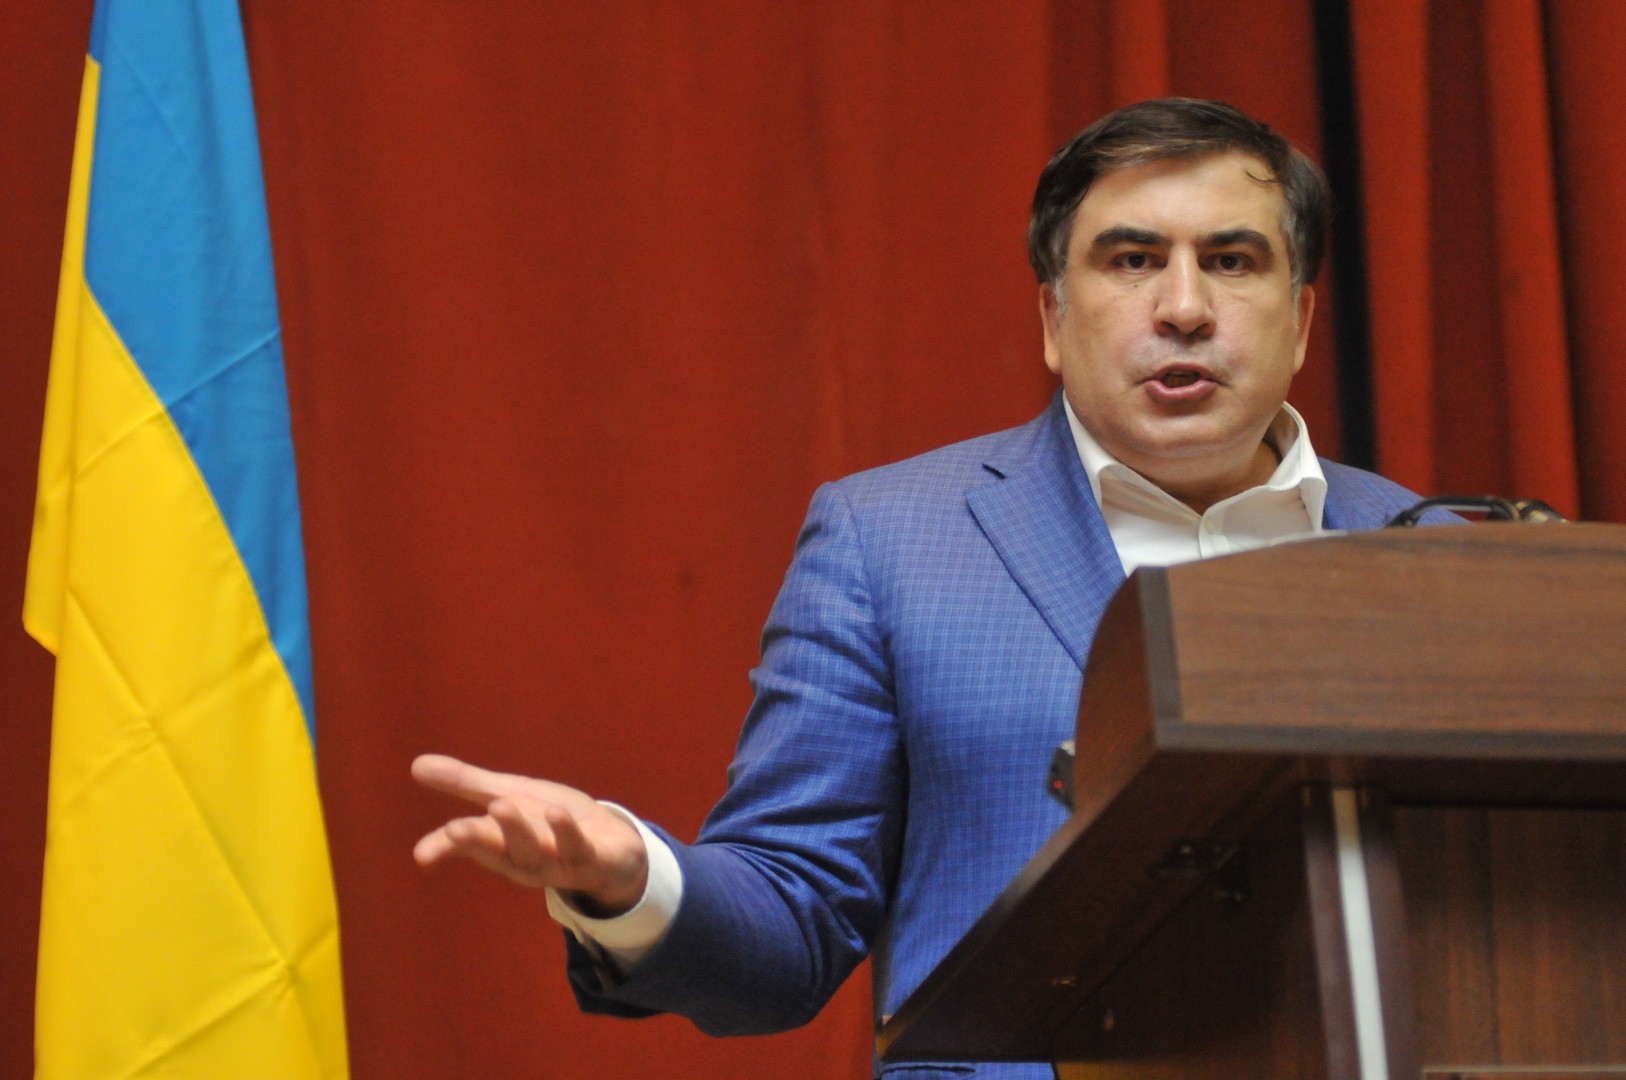 Саакашвили заявил о намерении легально вернуться на Украину